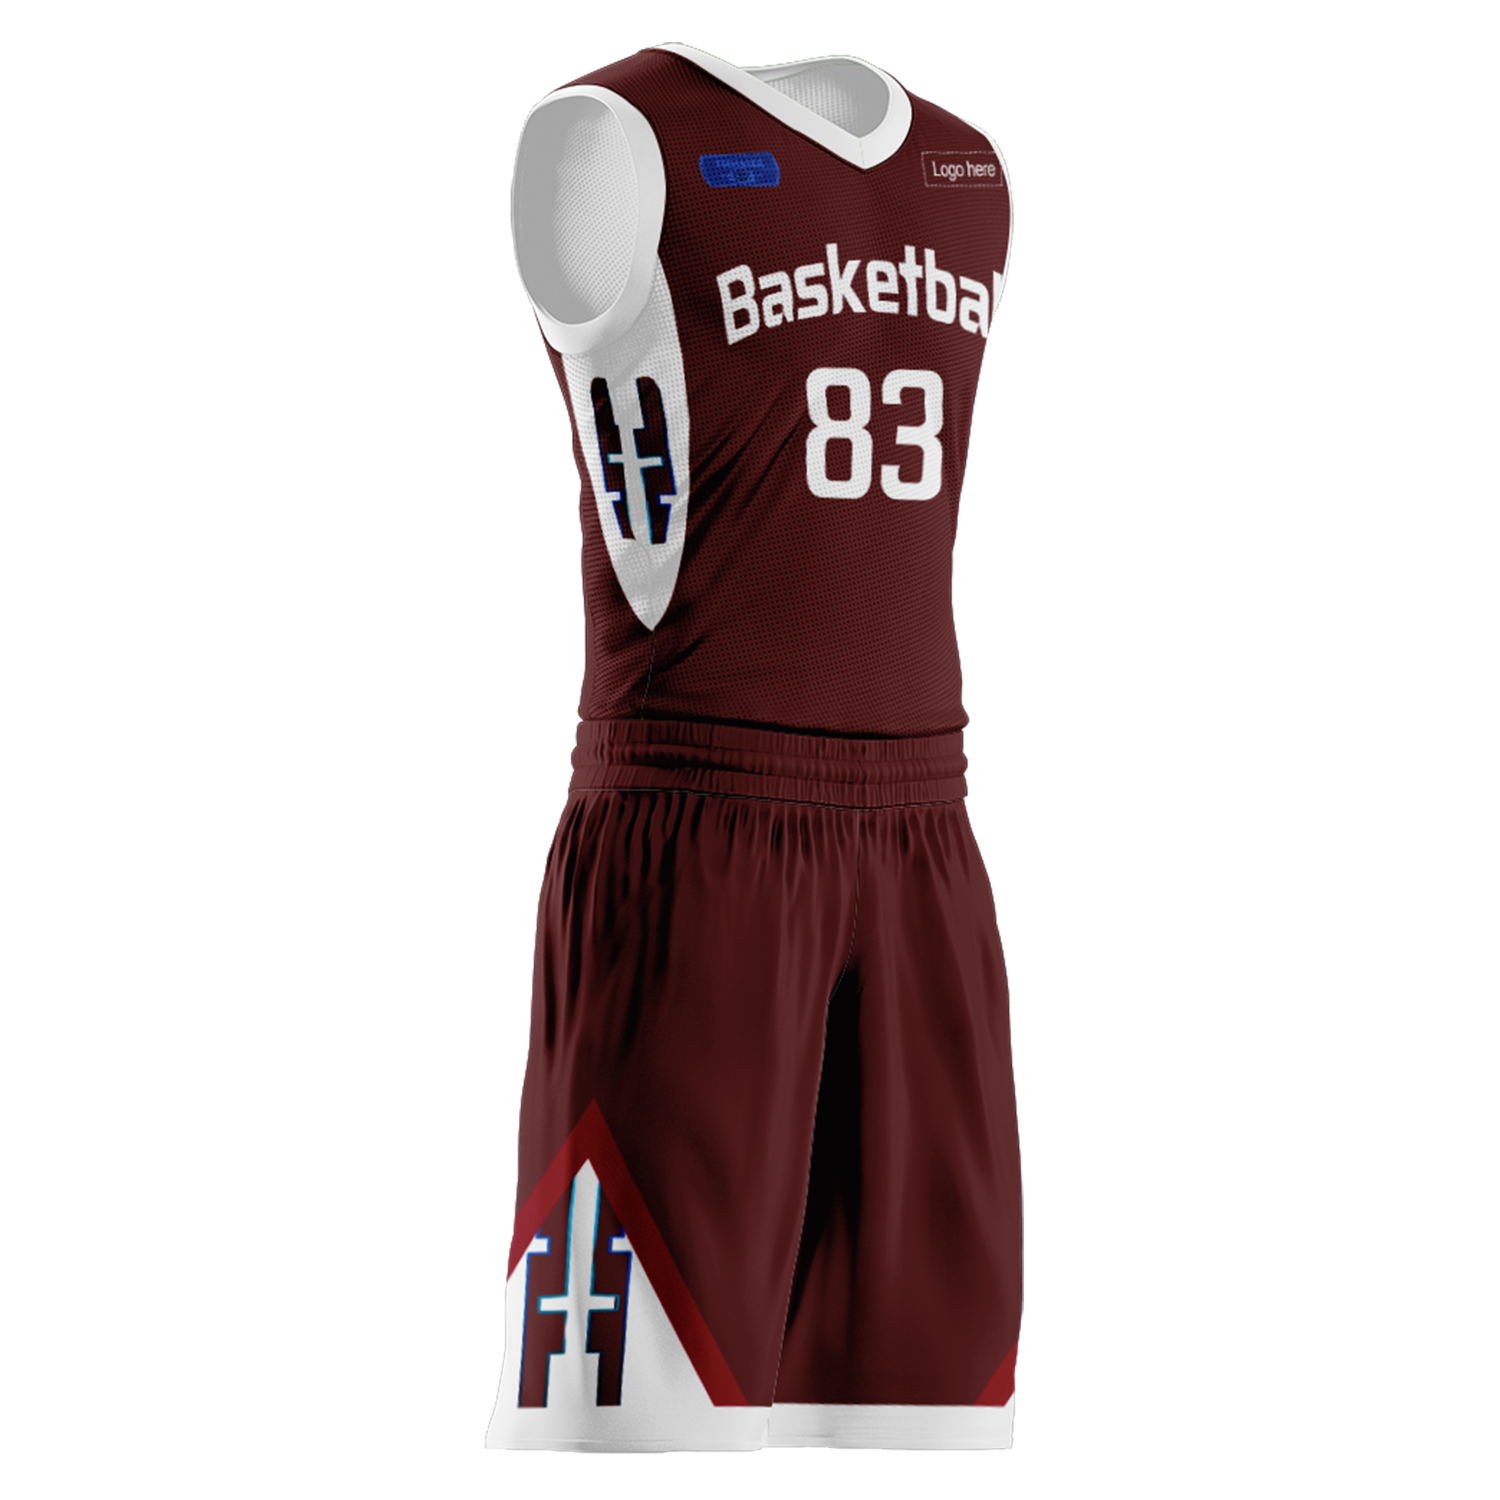 Kundenspezifische Katar-Team-Basketballanzüge